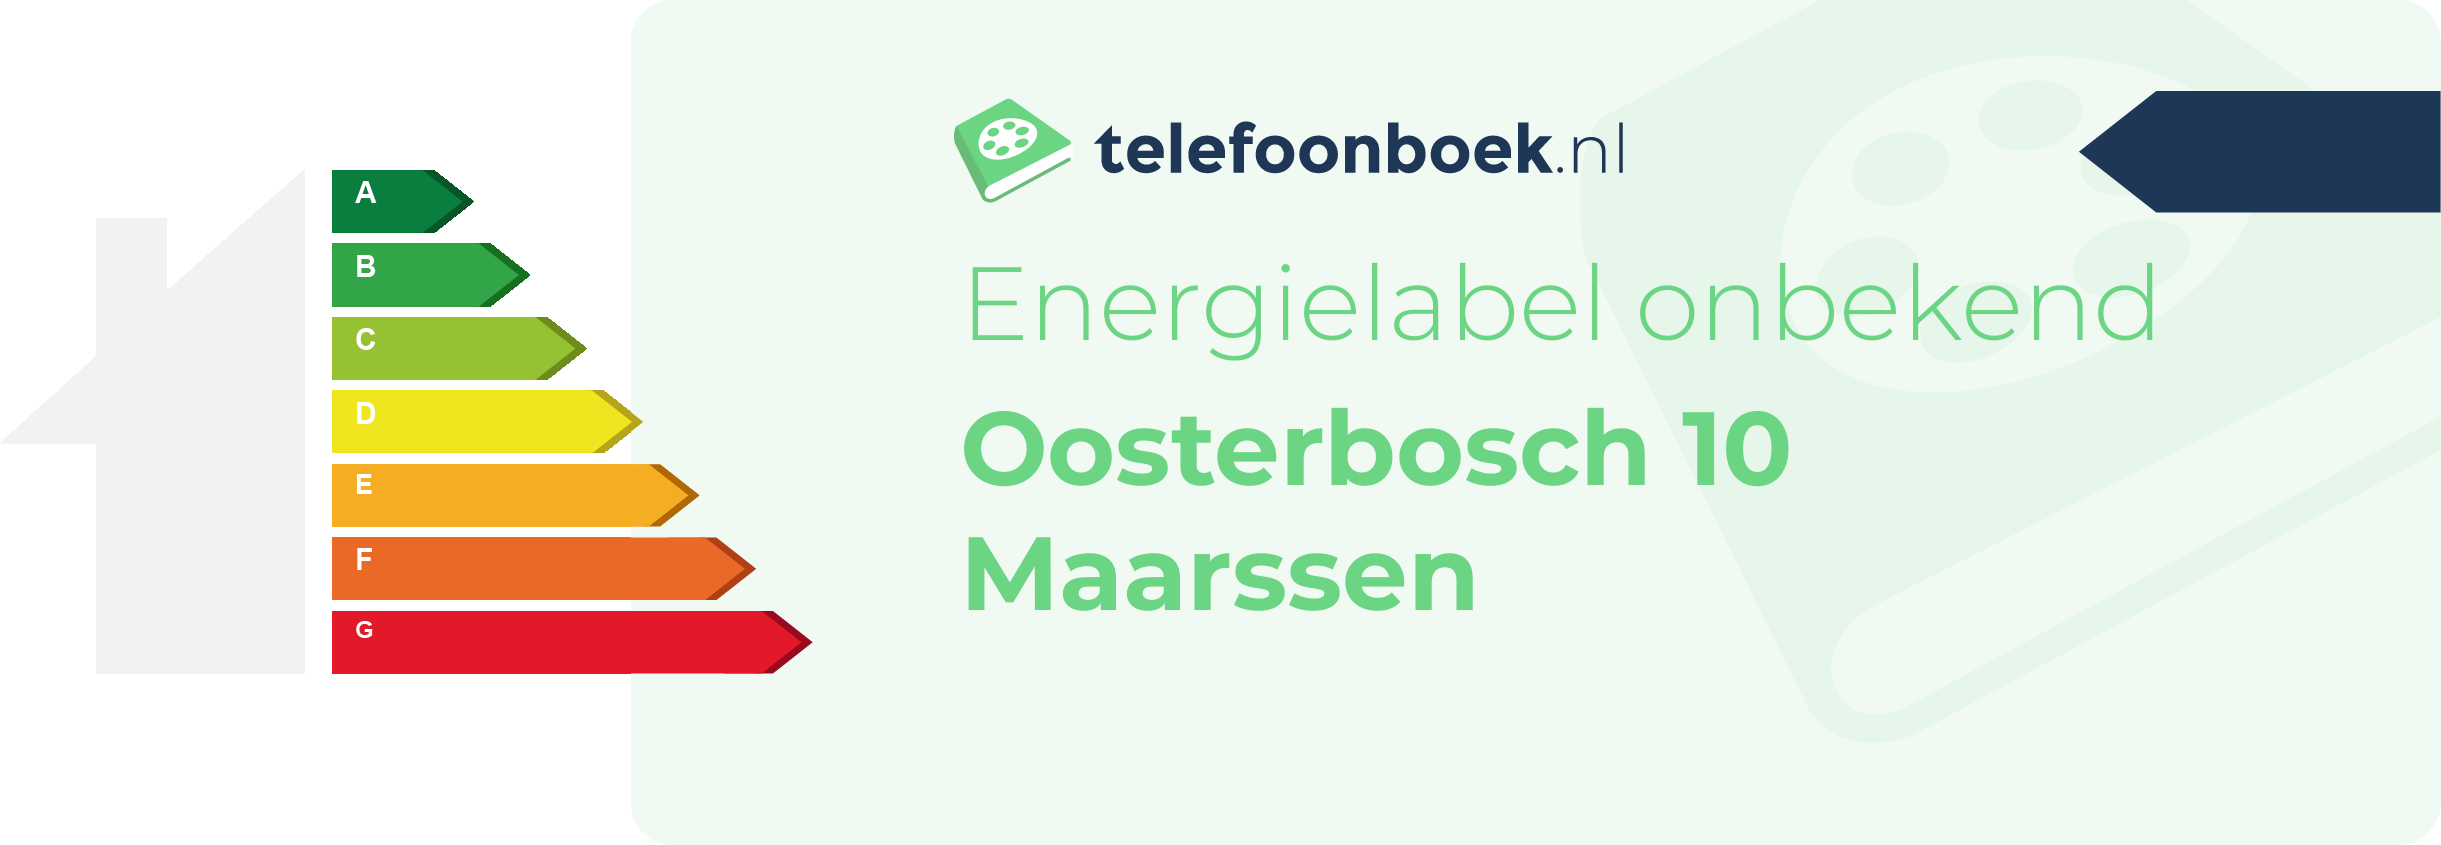 Energielabel Oosterbosch 10 Maarssen